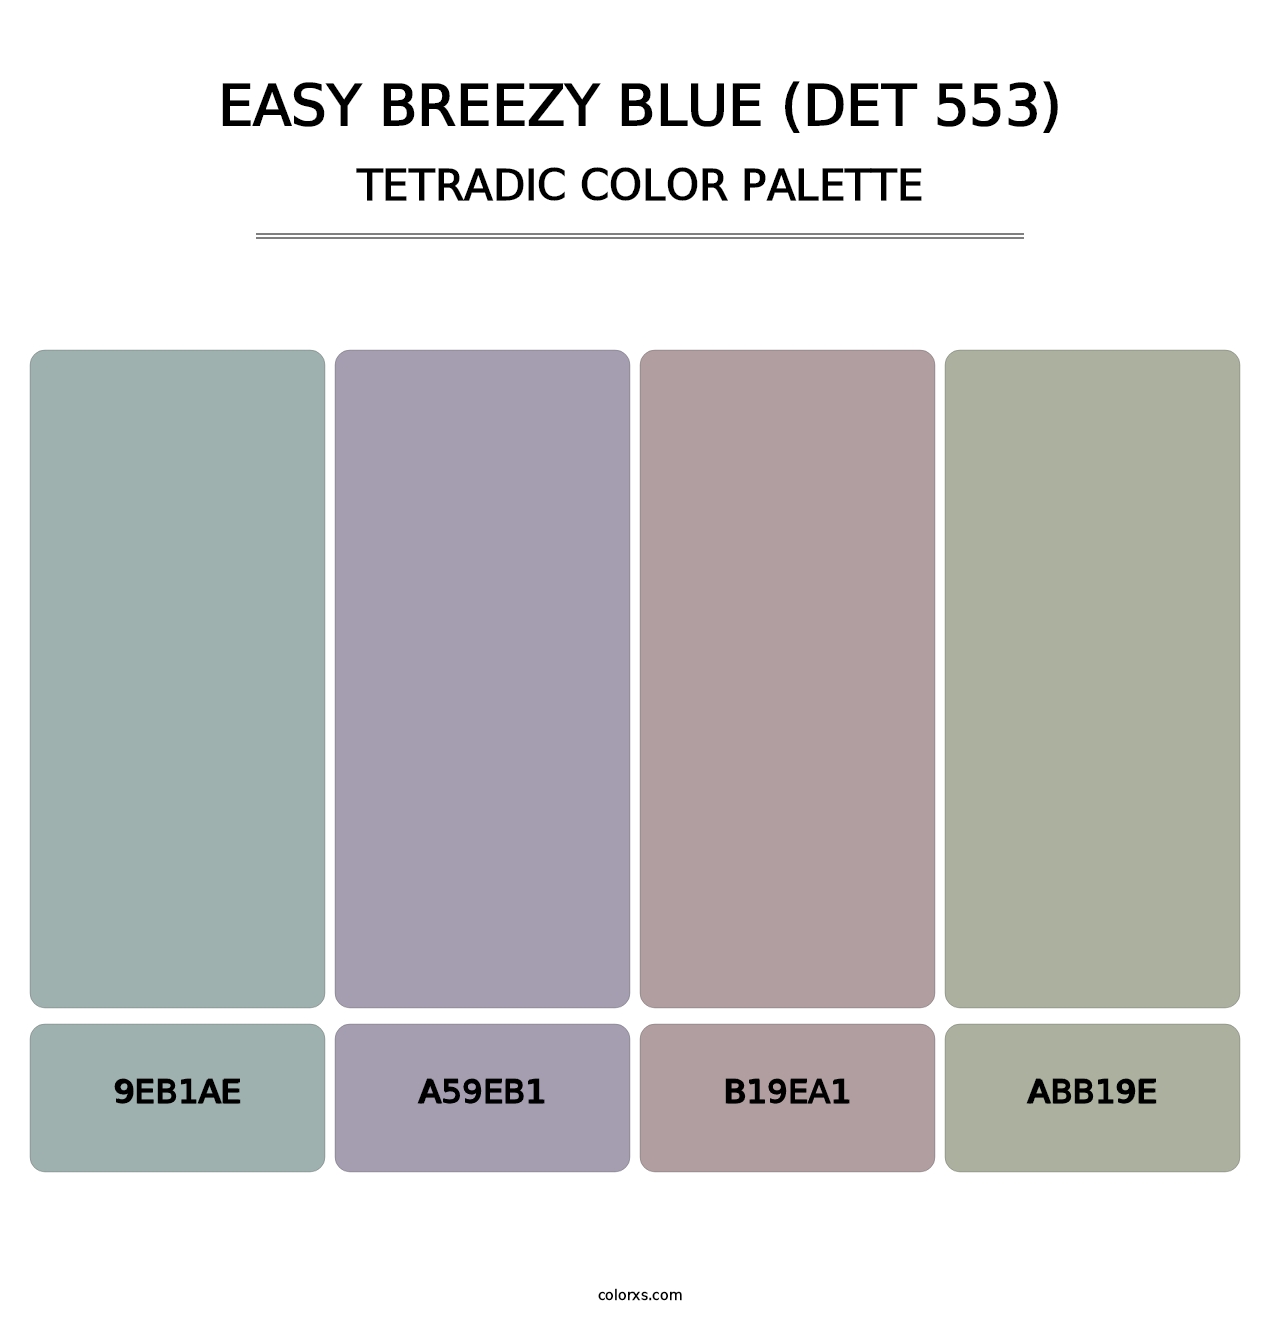 Easy Breezy Blue (DET 553) - Tetradic Color Palette